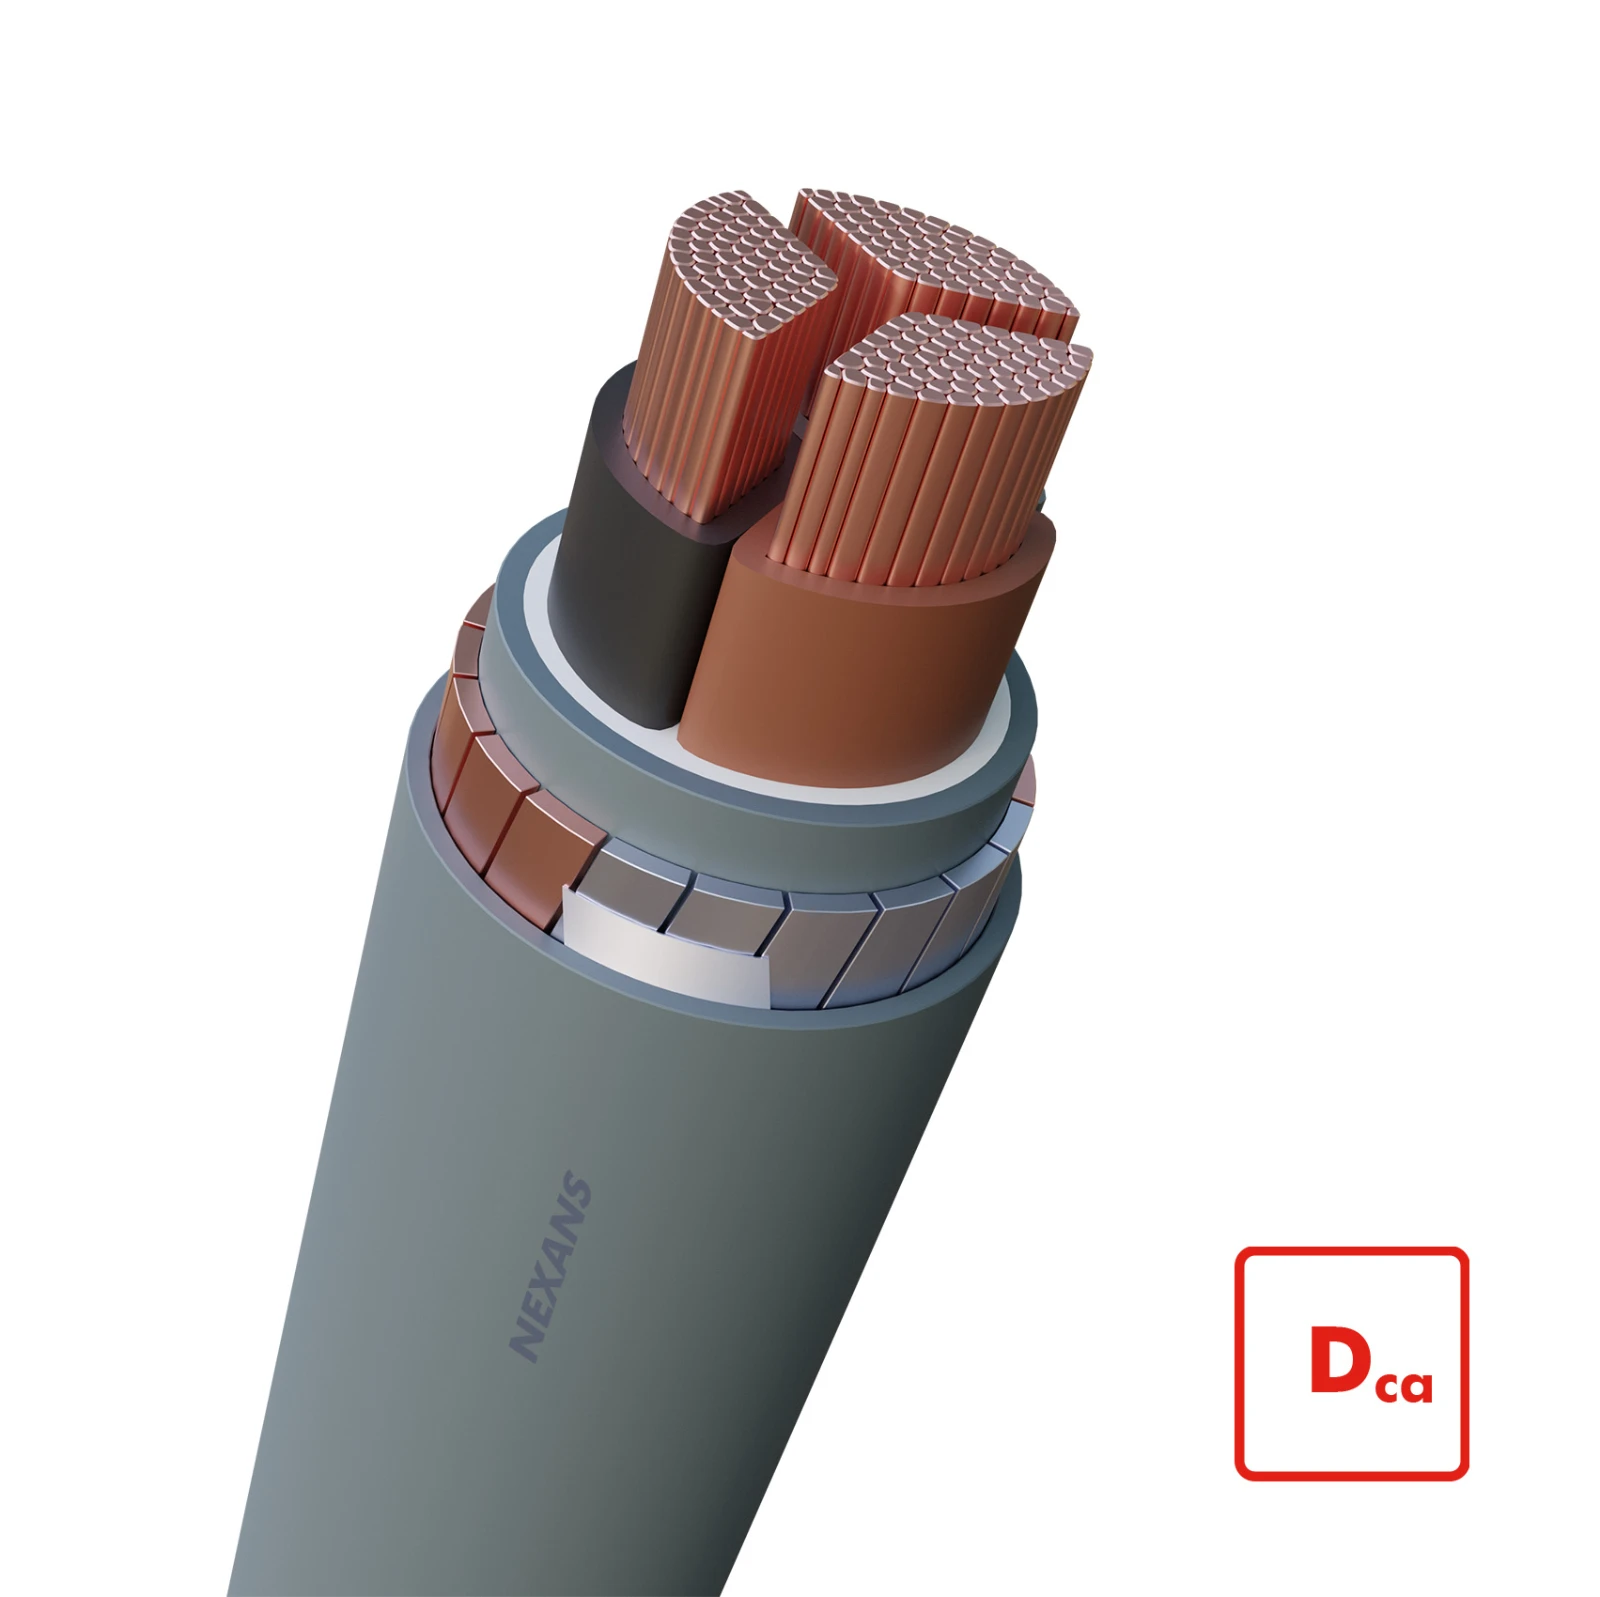 Nexans Voedingskabel >= 1 kV, voor vaste aanleg VG-YMvKas Dca-s2 Flex